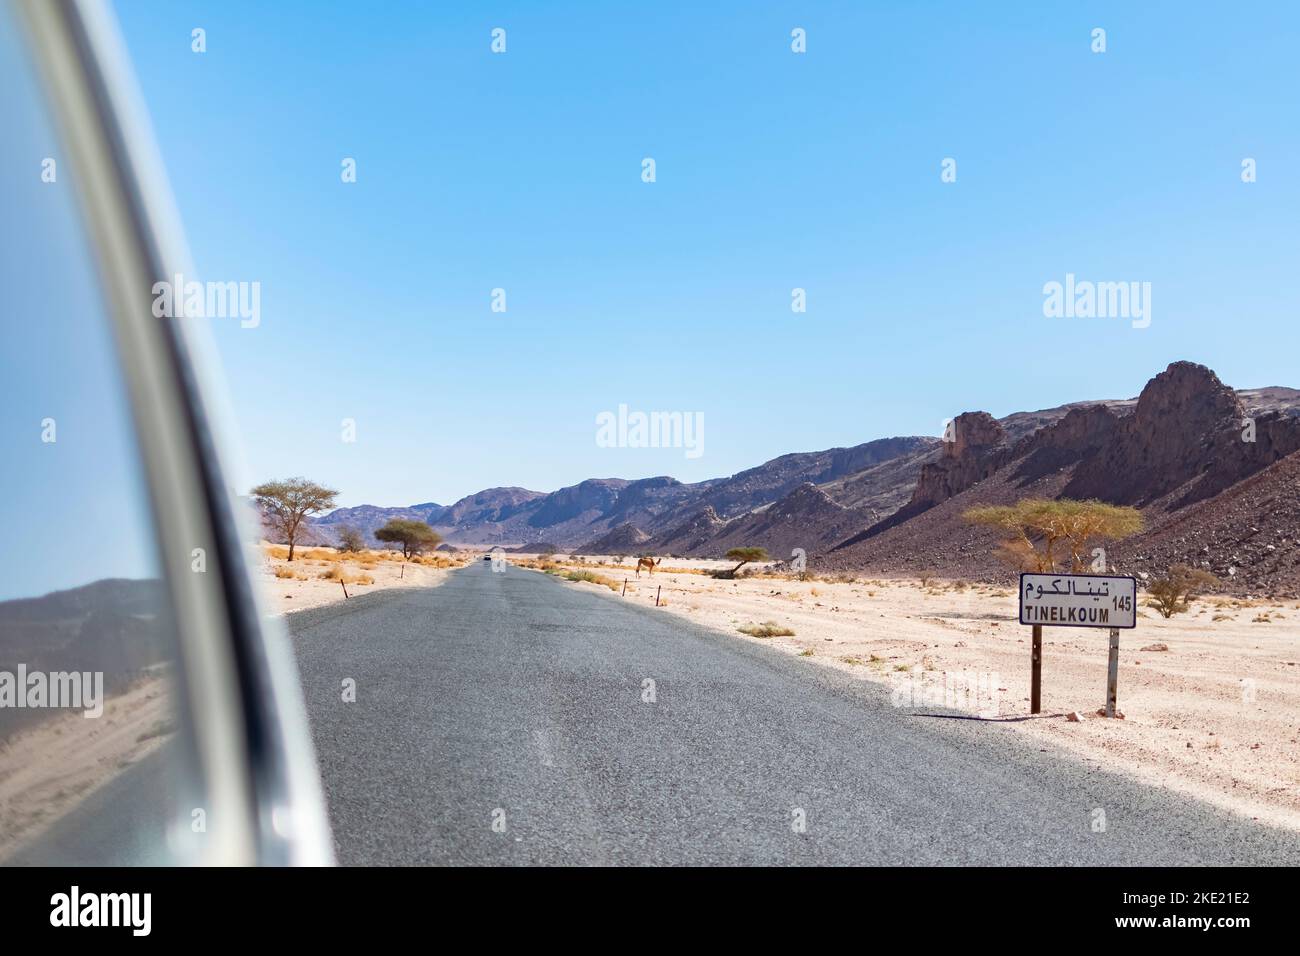 Tin El Koum, Algerien. Vom hinteren 4X4-Fenster aus kann man die Tinelkoum-Wüstenstraße mit einem Dromedar auf dem Regiment, den Rocky Mountains und dem blauen Himmel betrachten. Stockfoto